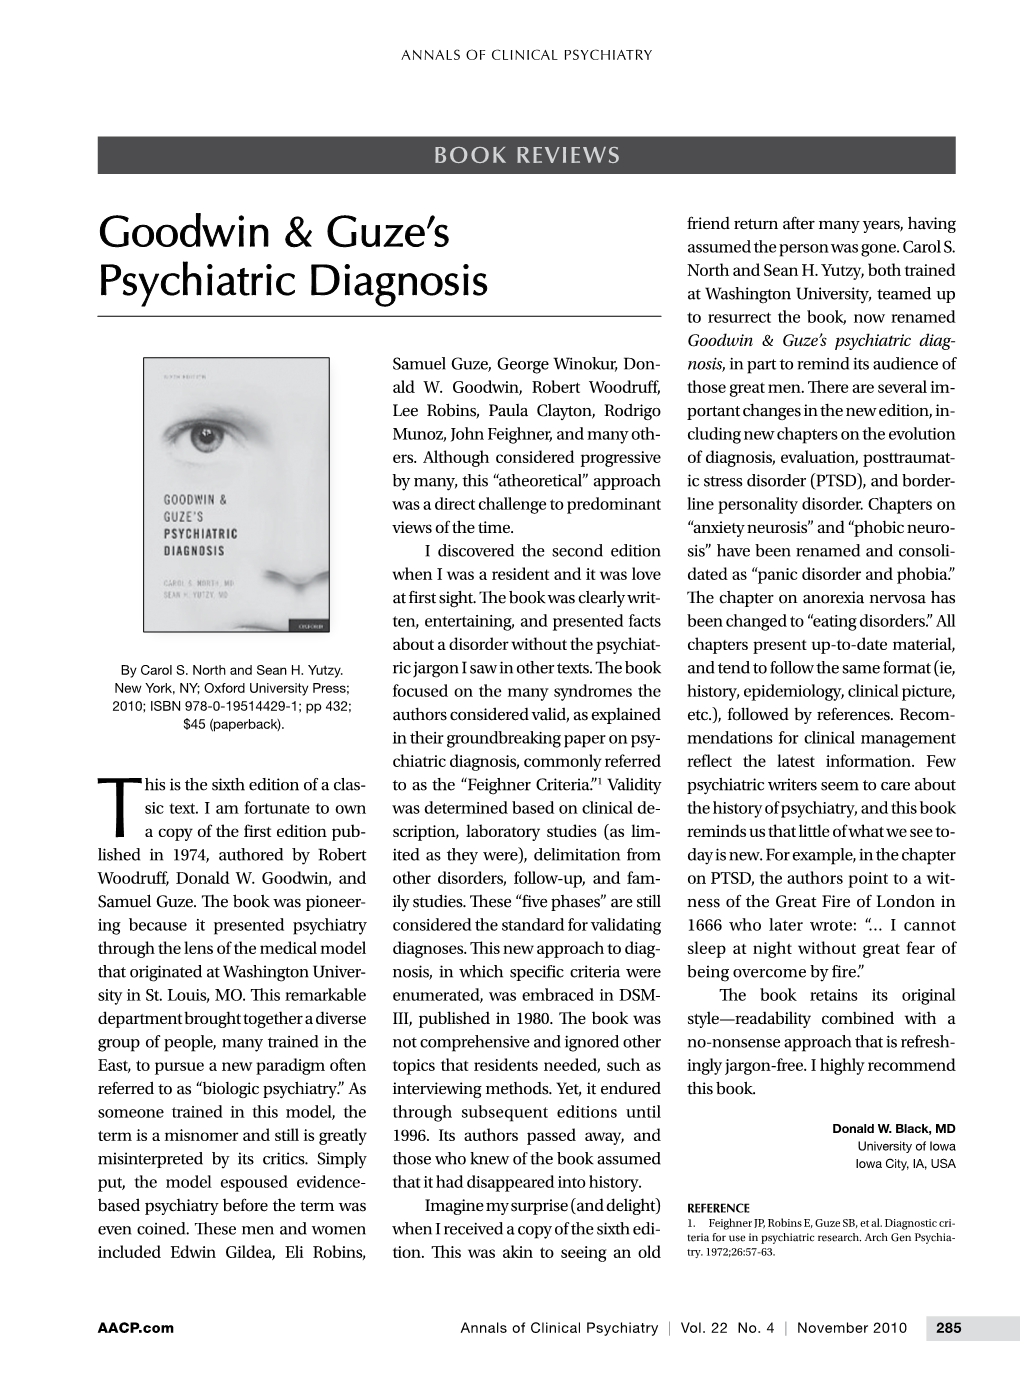 Goodwin & Guze's Psychiatric Diagnosis